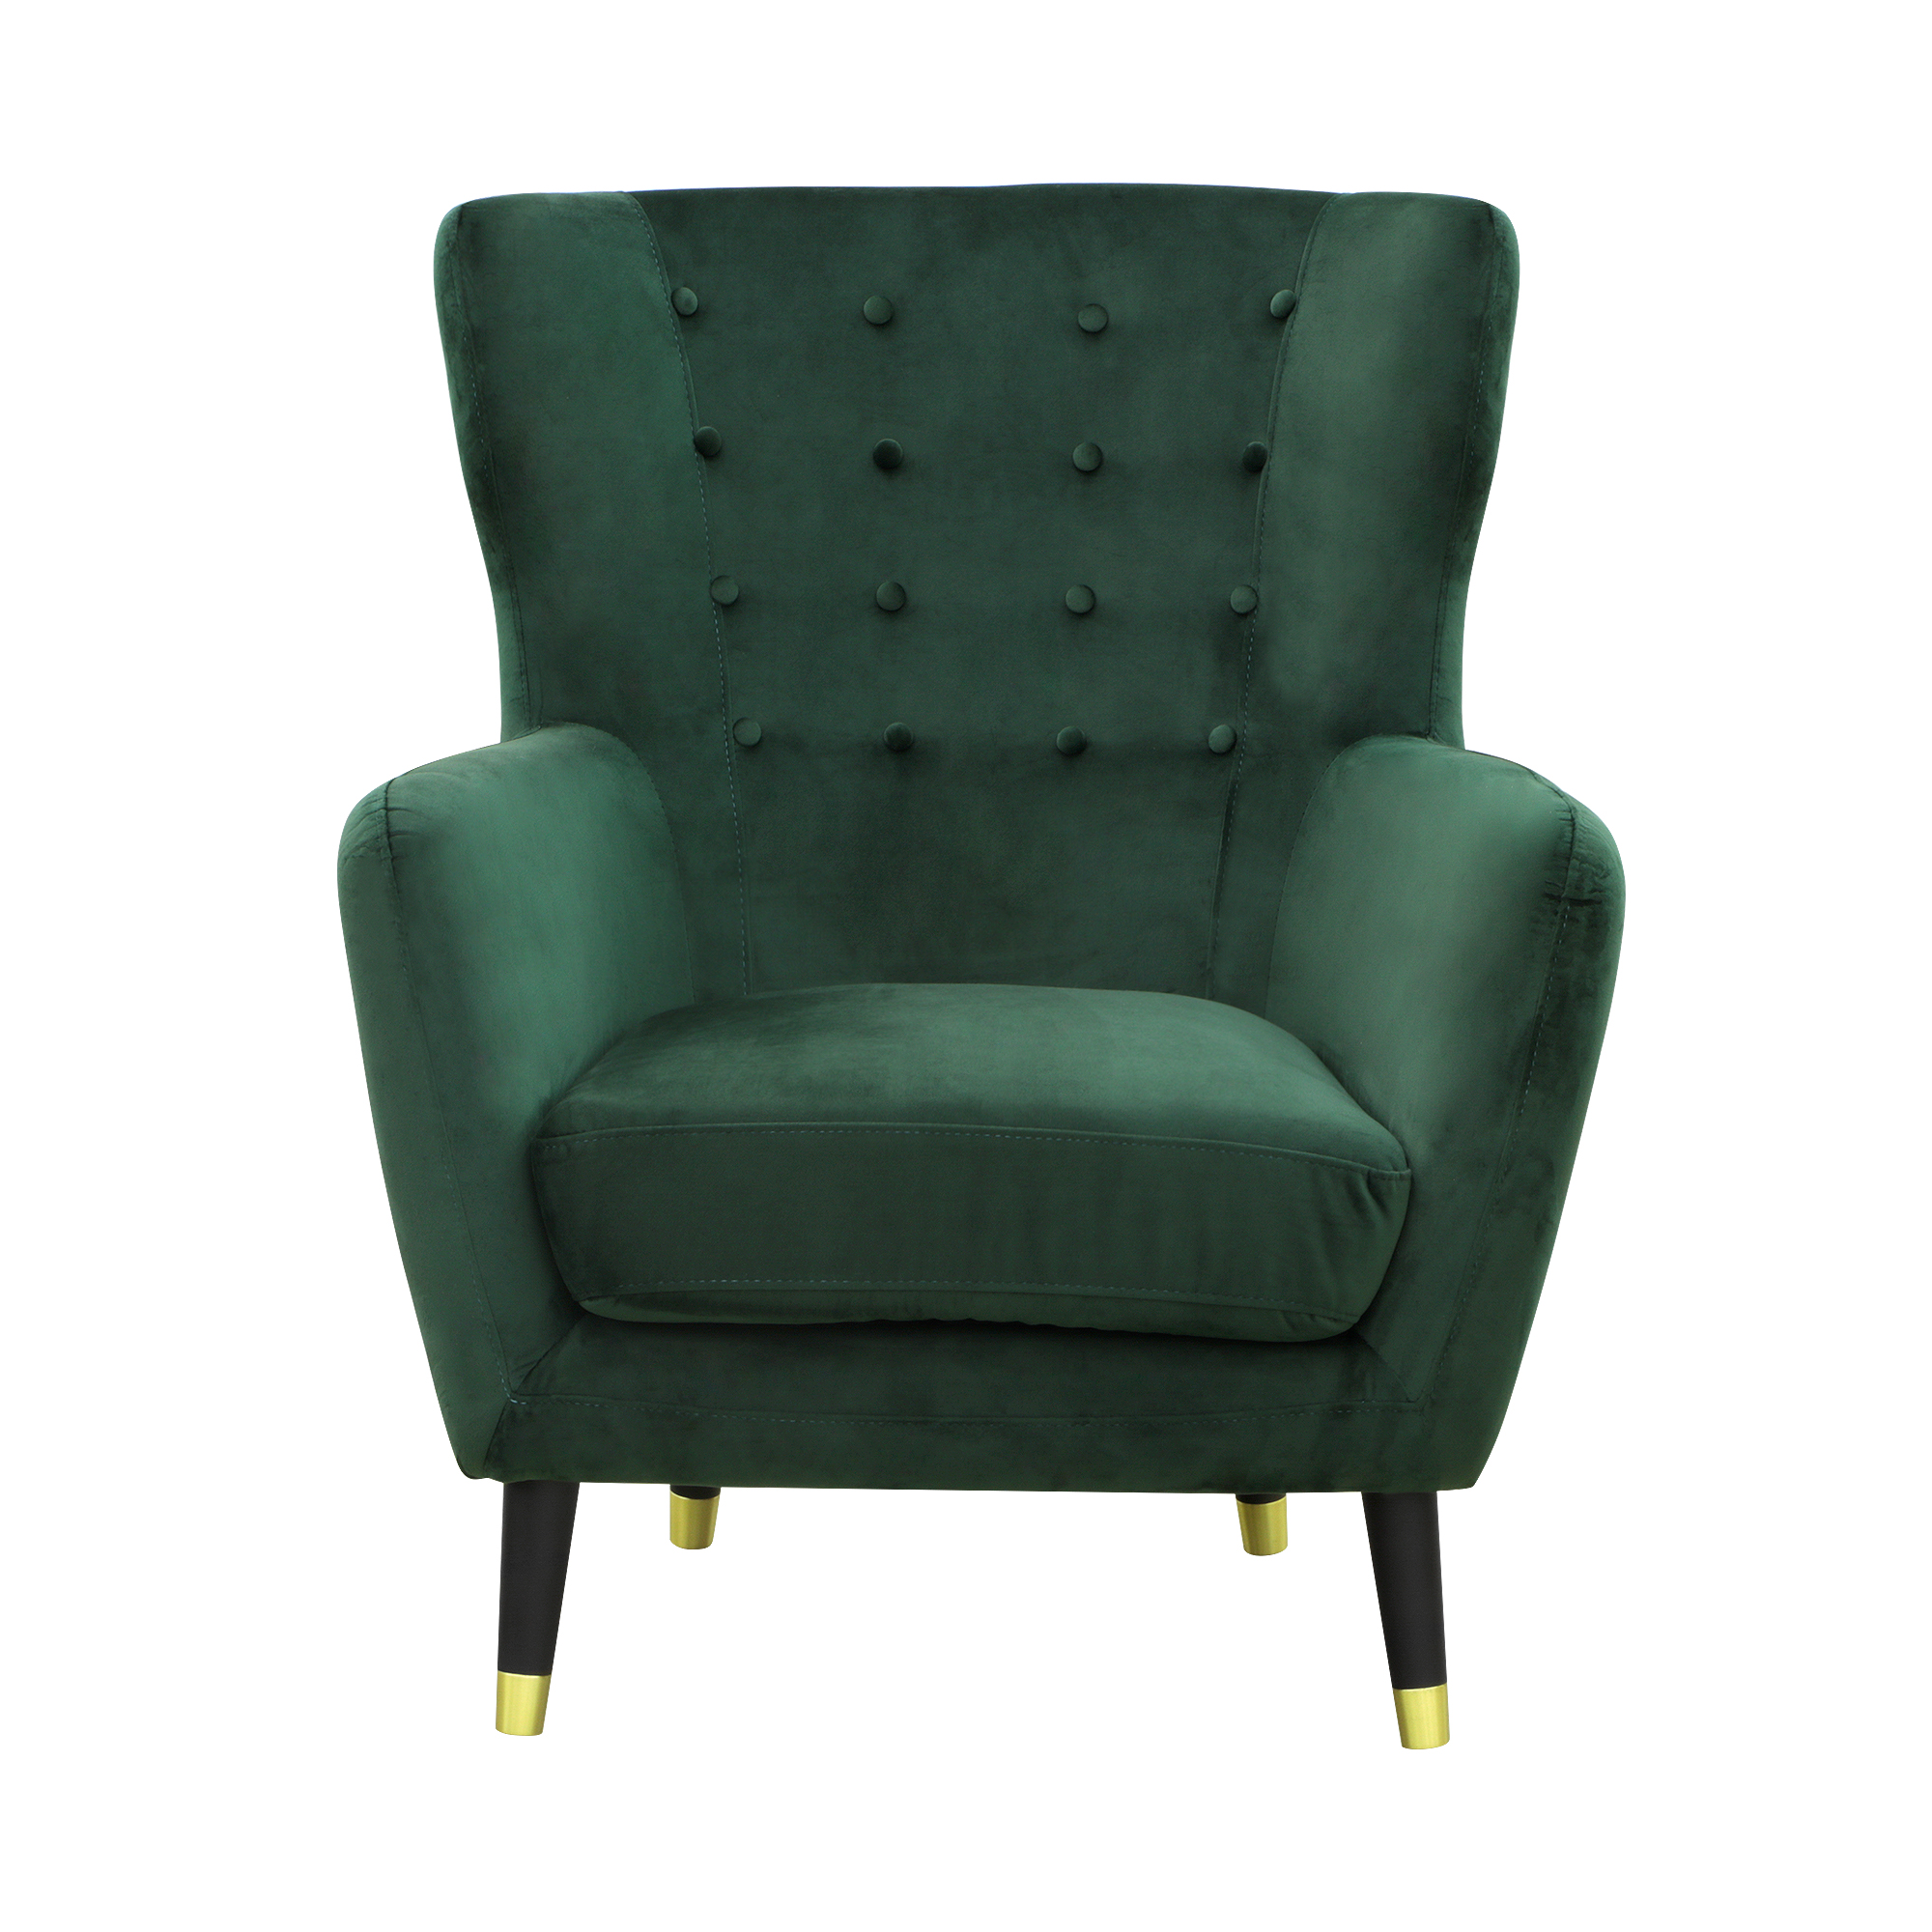 Кресло Liyasi элфи зеленое 80x81x93cm - фото 2